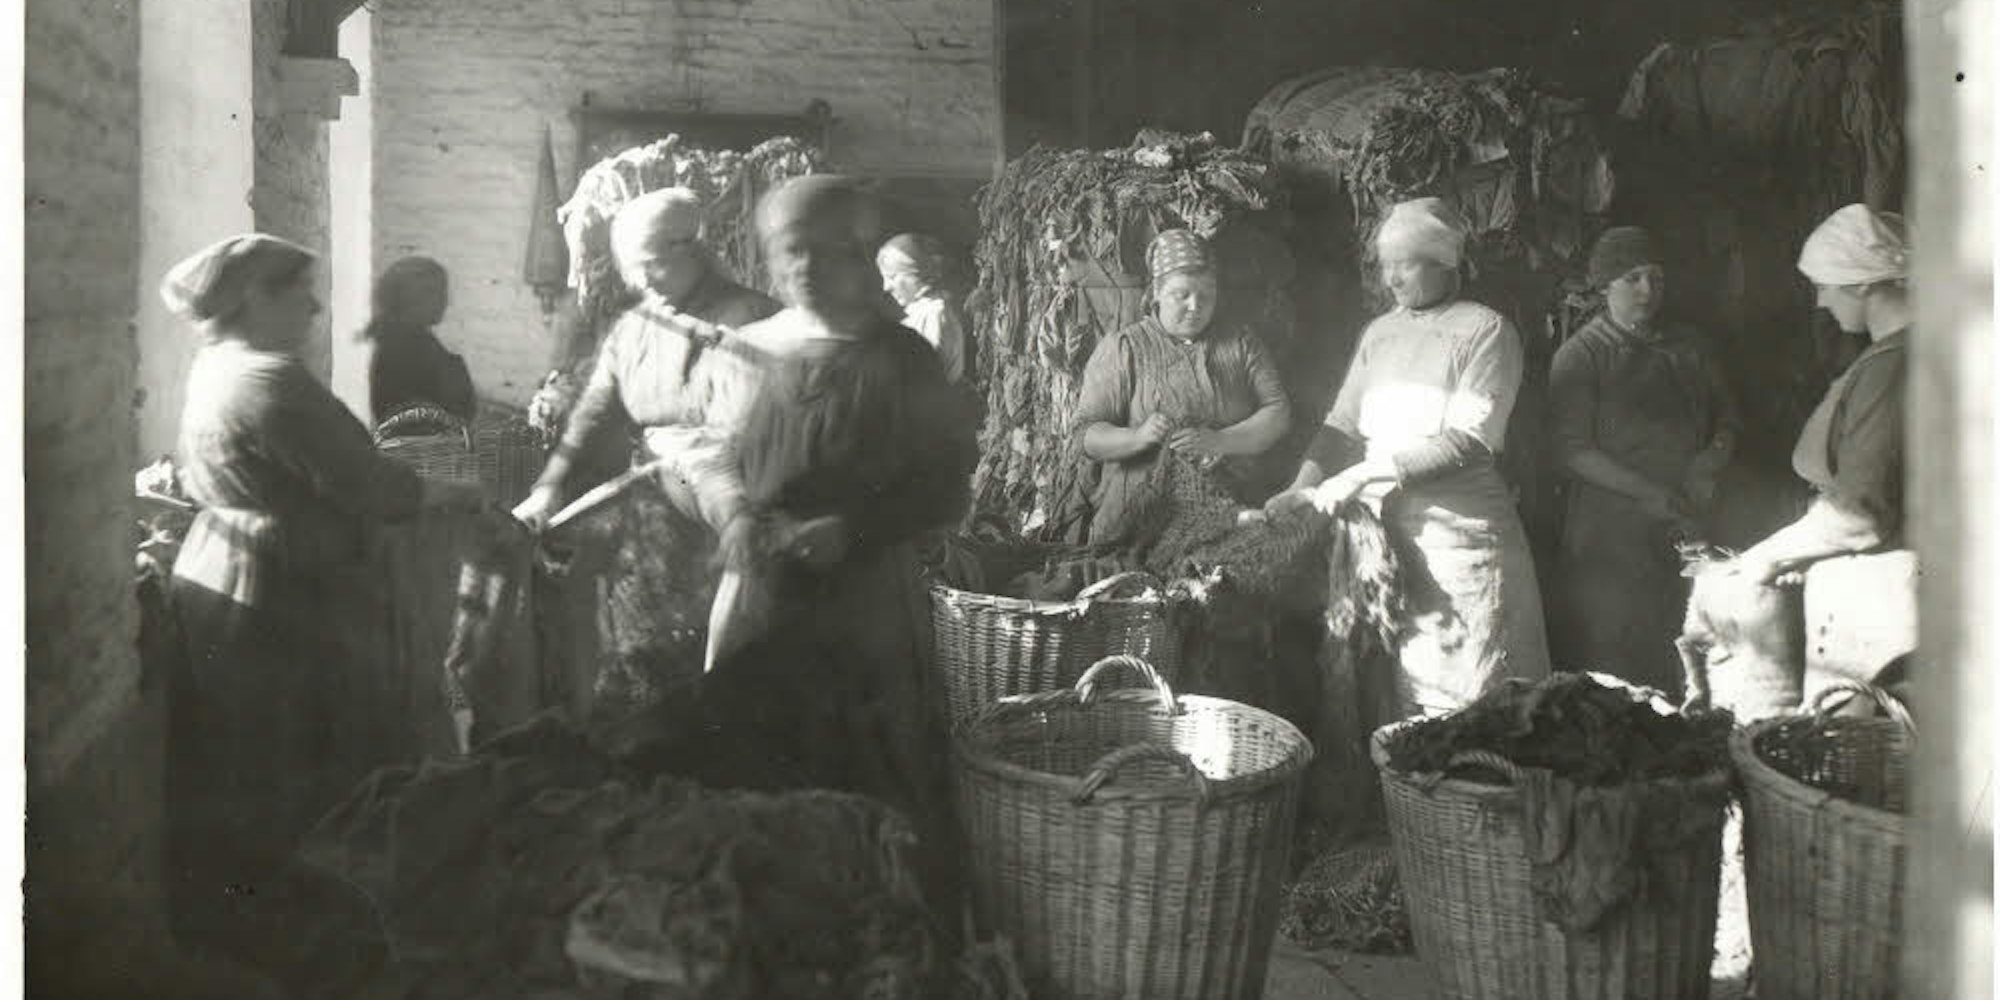 Lumpensortiererinnen bei der Arbeit. Lange Zeit waren alte Textilien der wichtigste Rohstoff für die Papierherstellung.